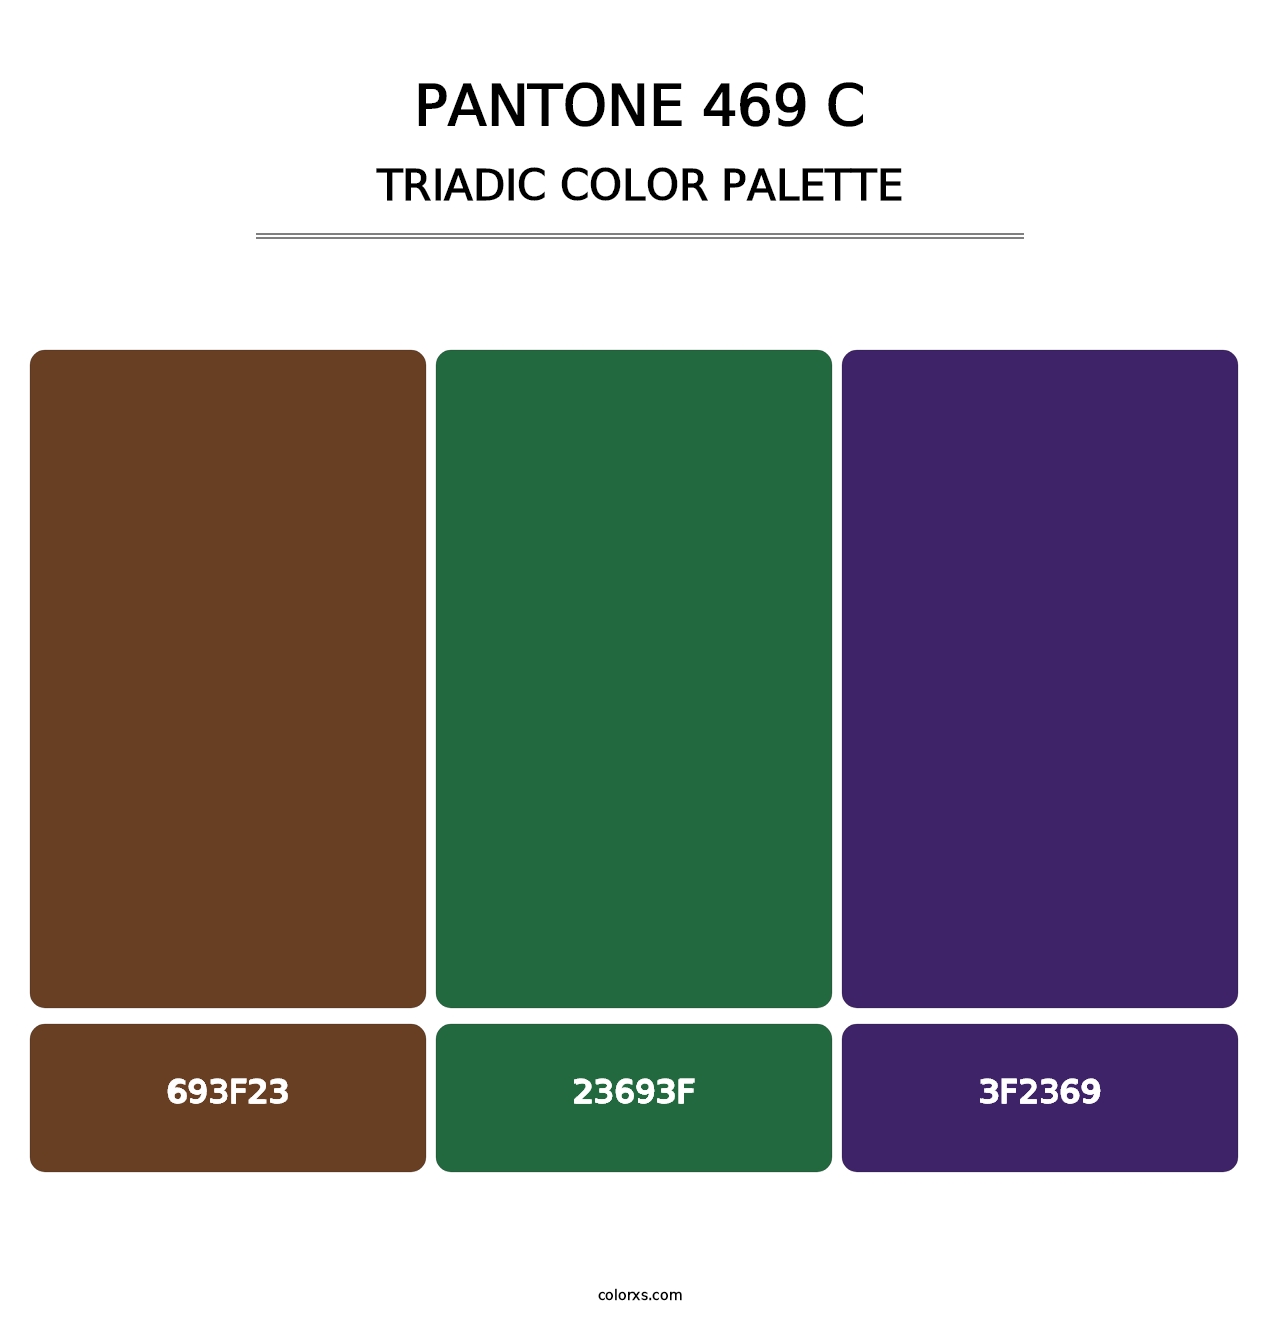 PANTONE 469 C - Triadic Color Palette